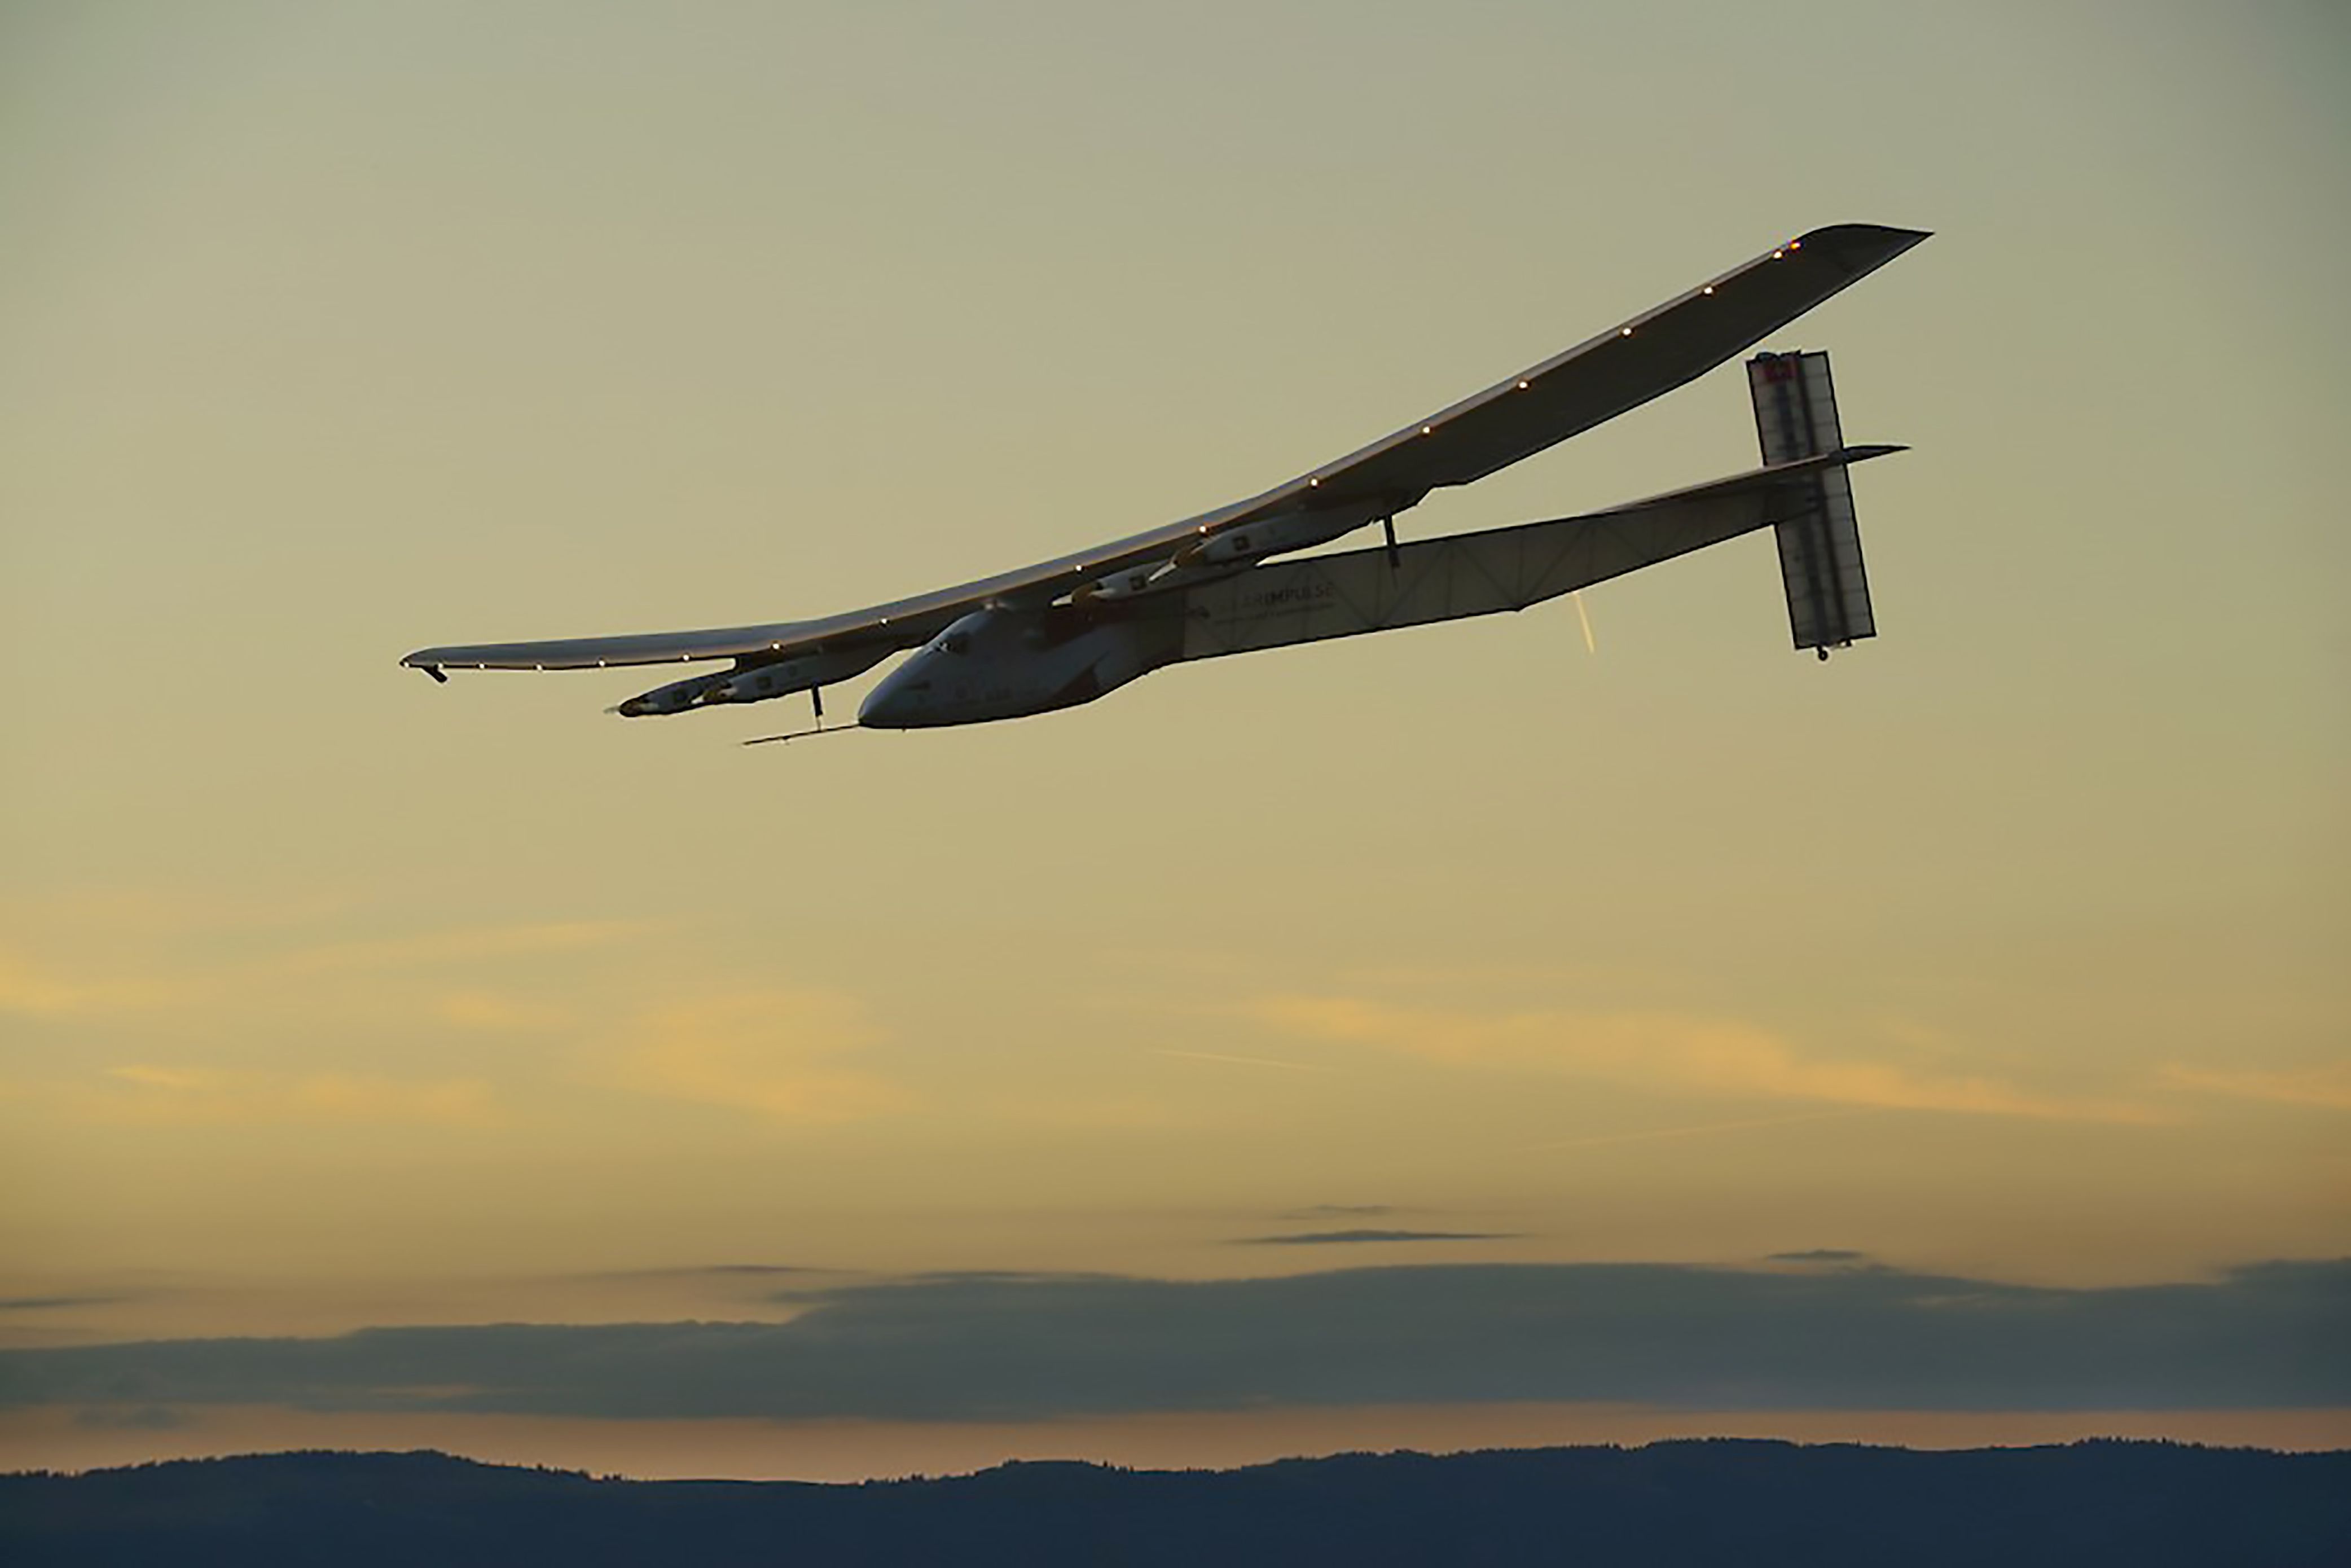 Solar Impulse 2 réussit sa première traversée de l’Atlantique  